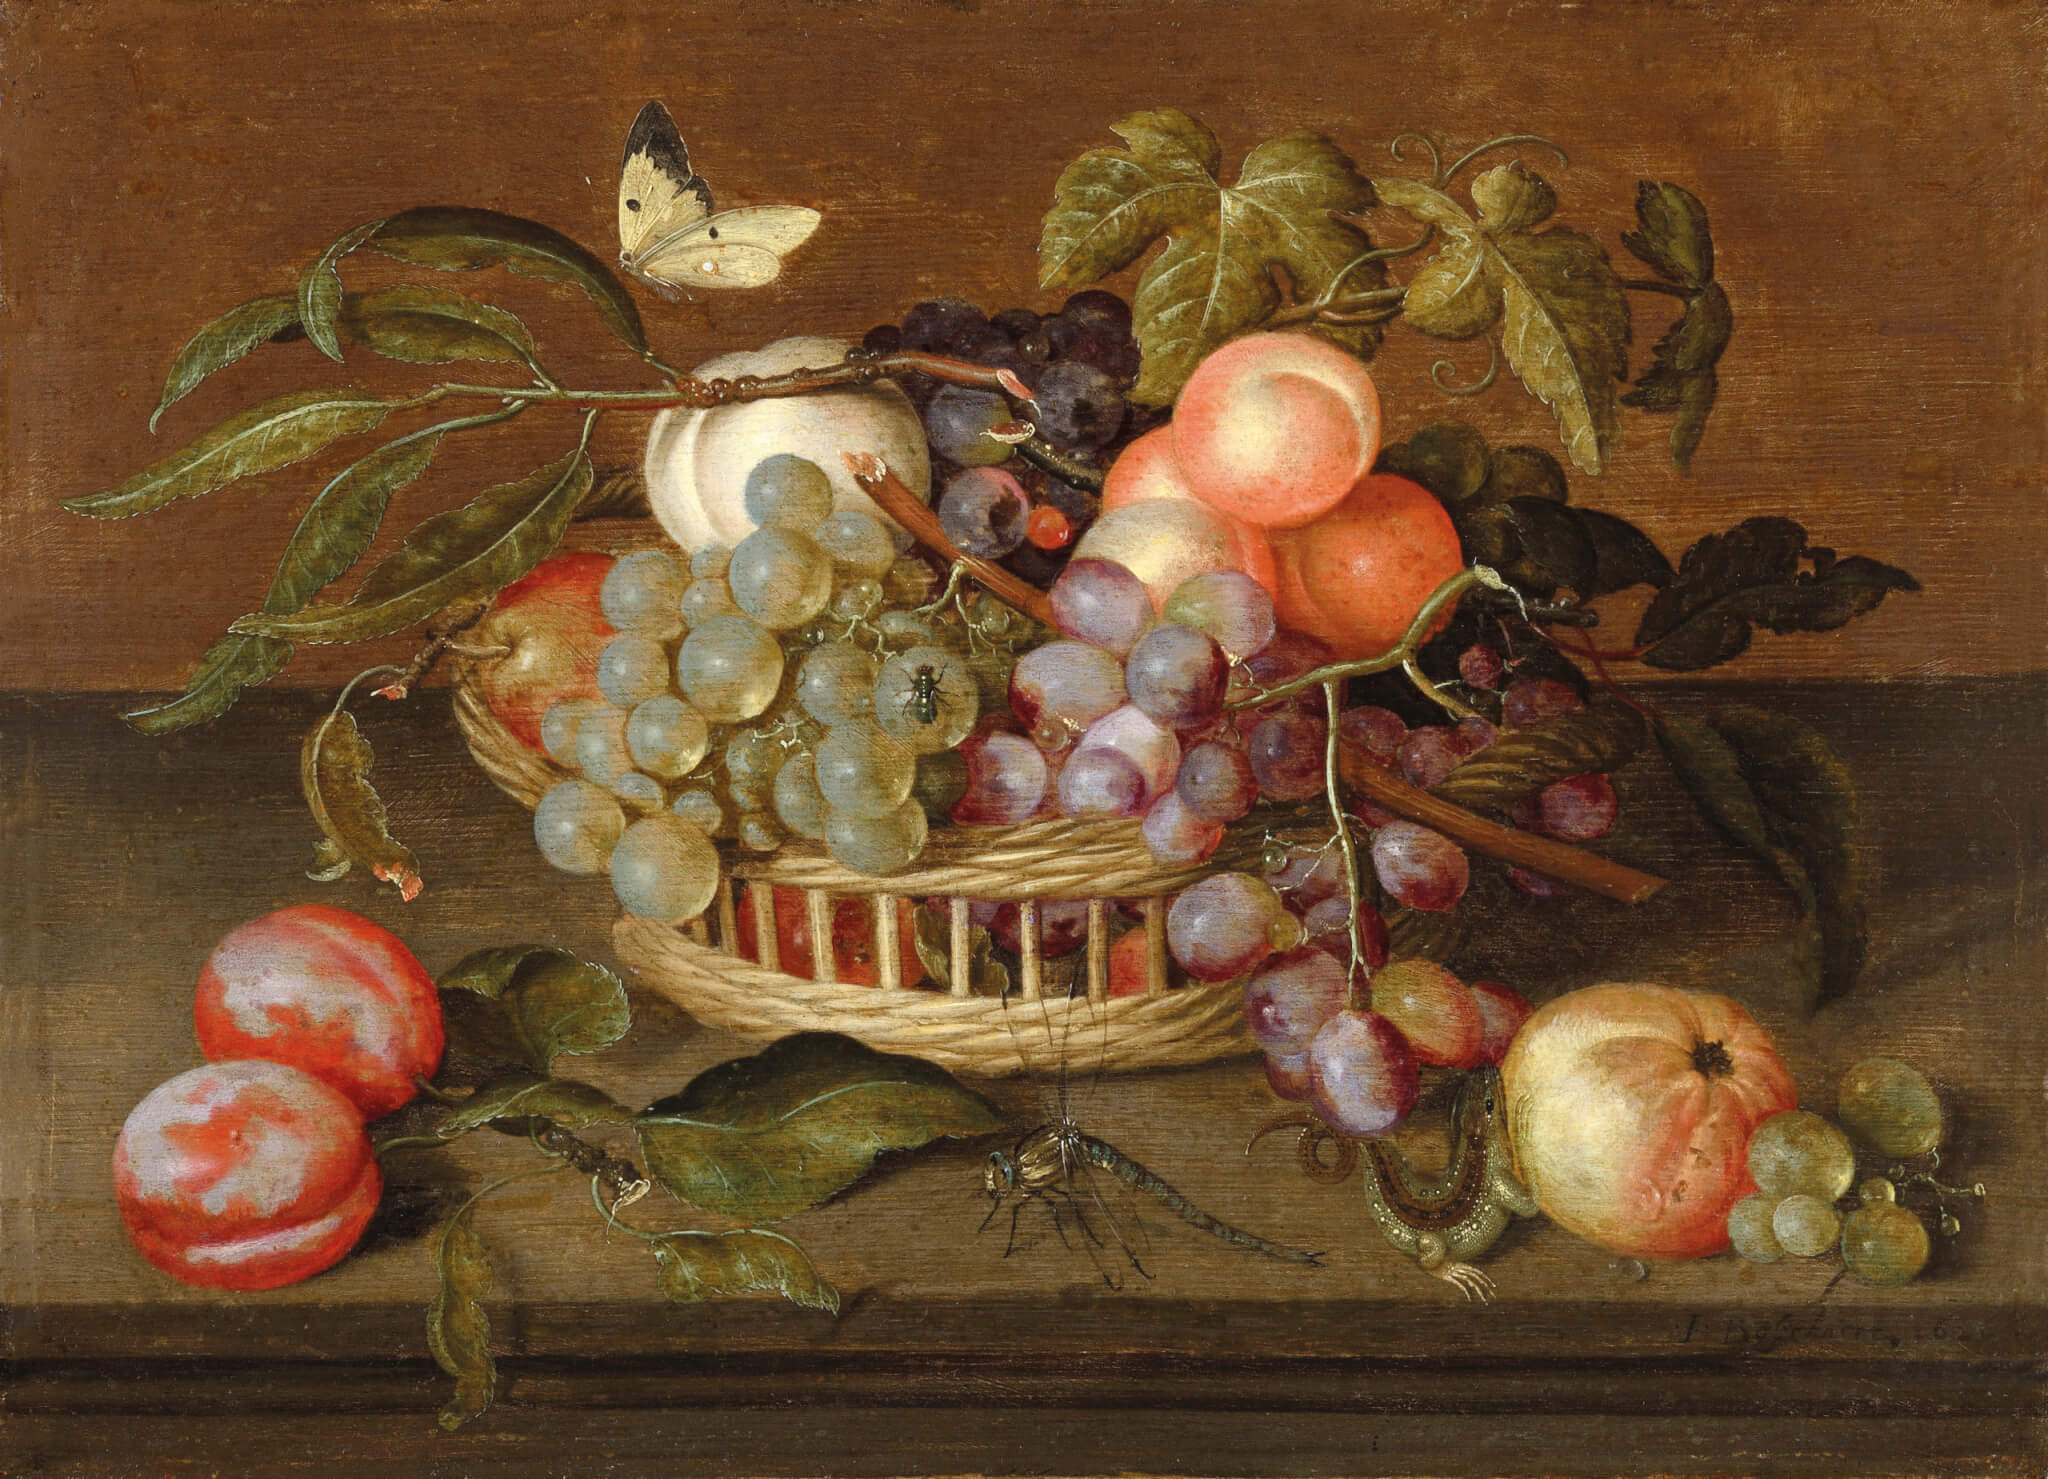 Johannes Bosschaert (Middelburg 1606-1629 Dordrecht), Panier de fruits avec insectes & un lézard, huile sur toile. © DR